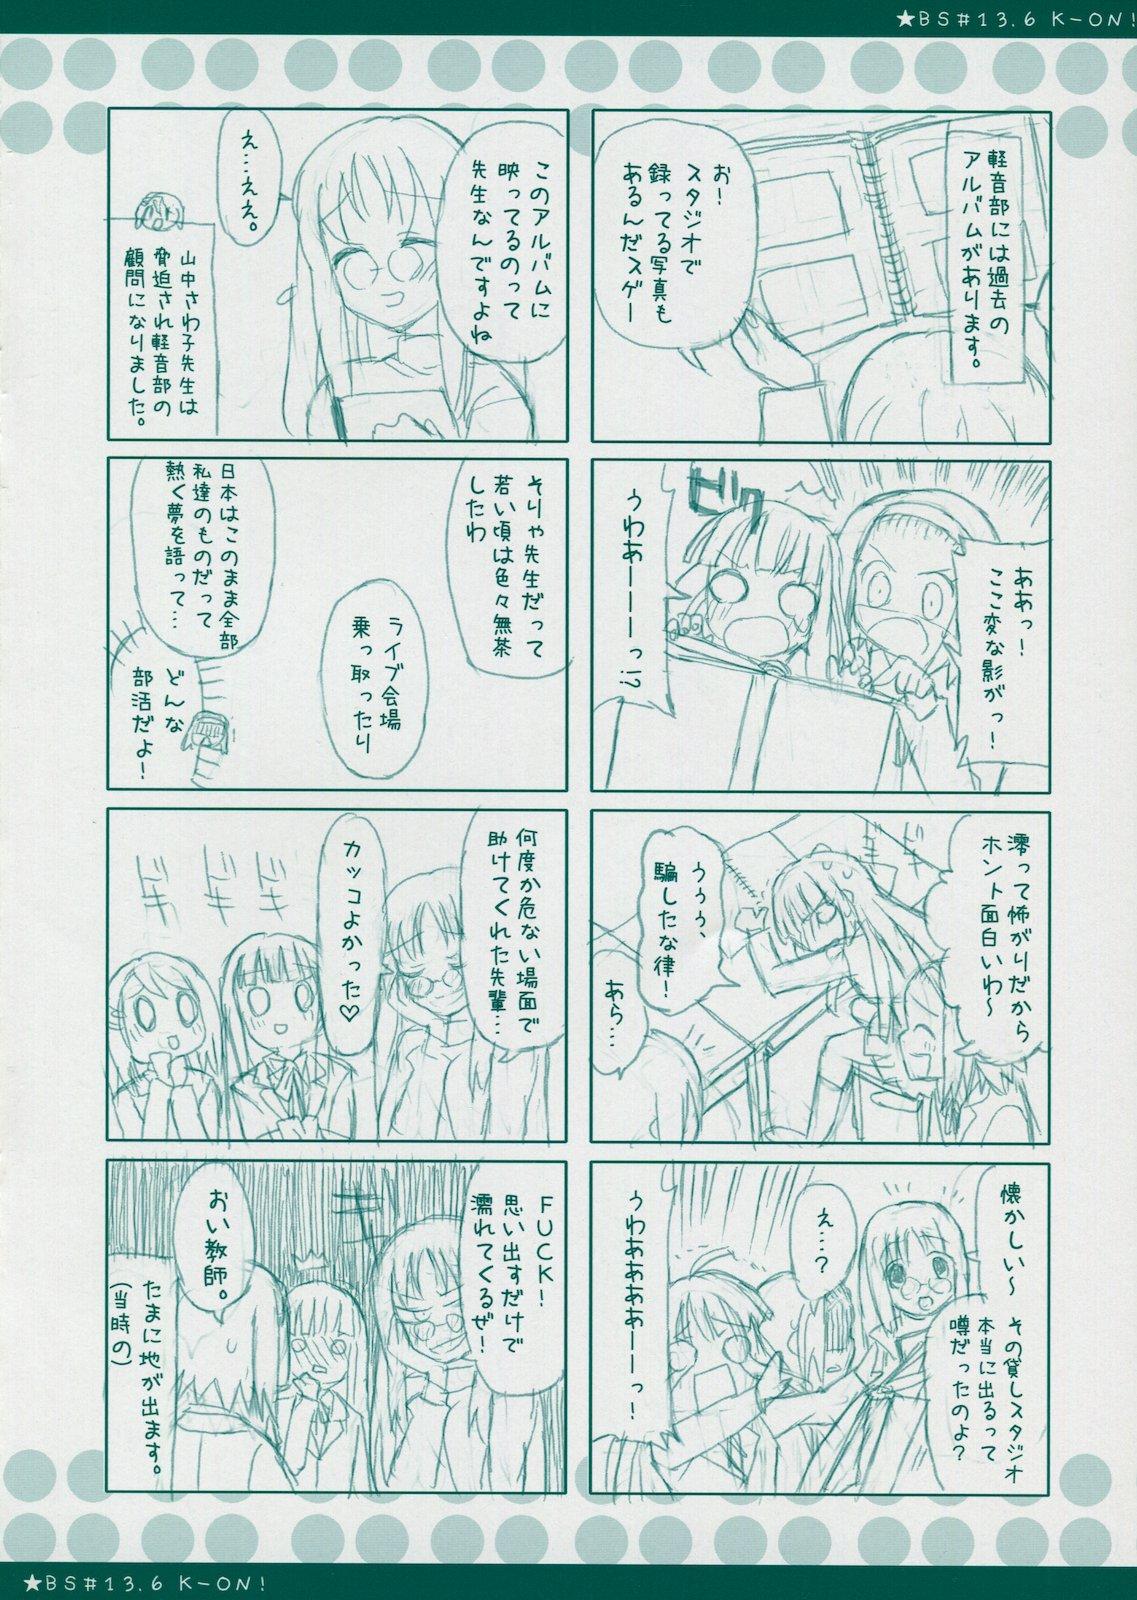 Coed BS#13.9 Keion no Rakugaki Bon 2 - K-on Panties - Page 10